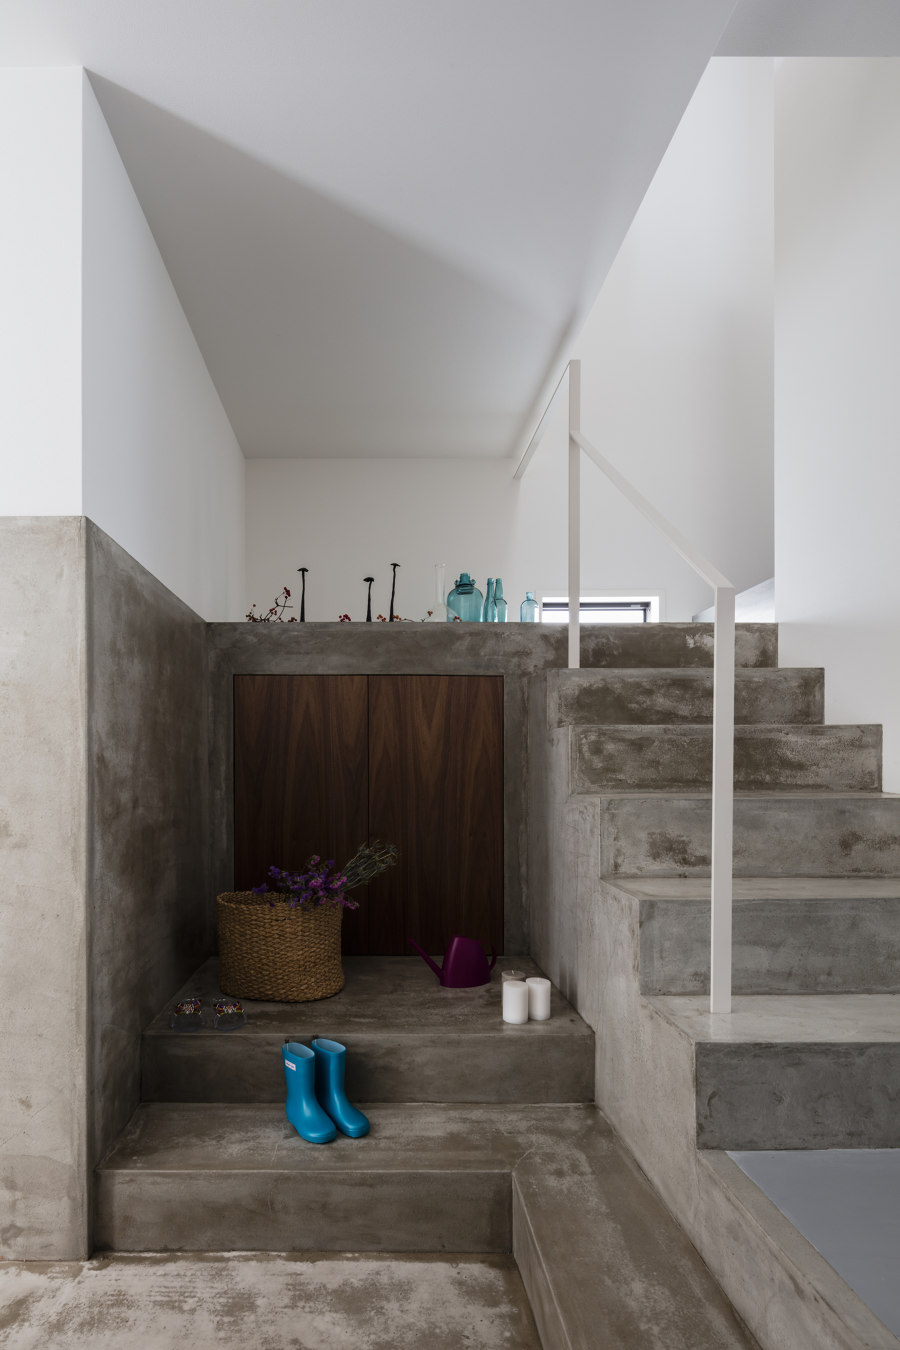 Slender House von FORM / Kouichi Kimura Architects | Einfamilienhäuser